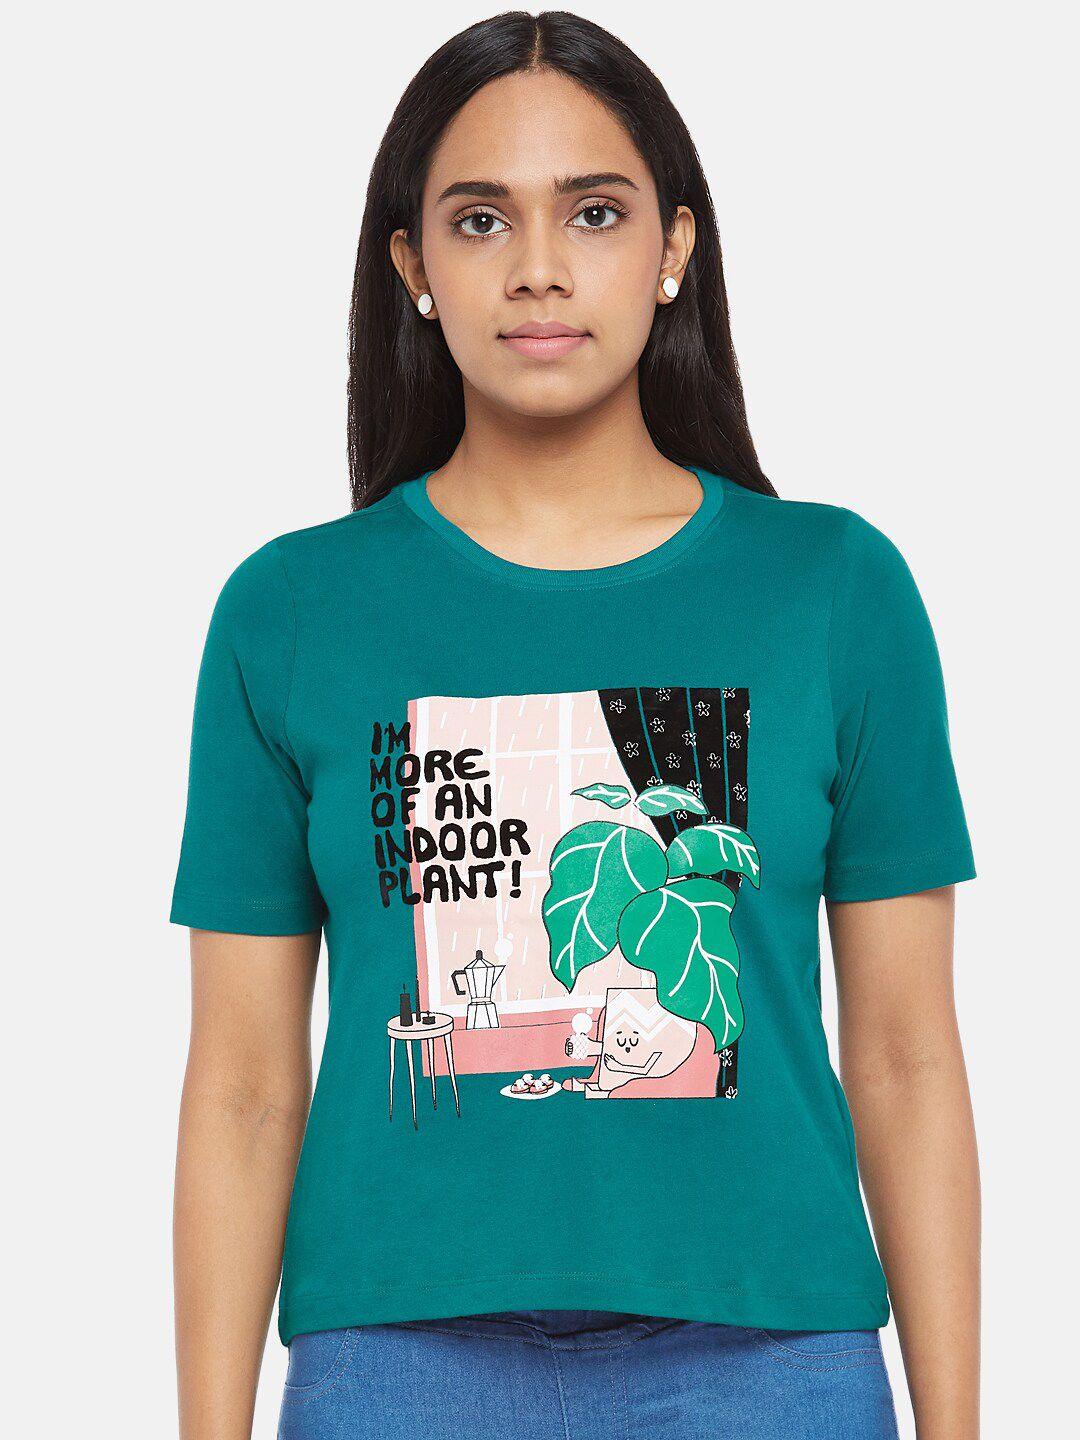 people women teal green & pink printed organic cotton t-shirt